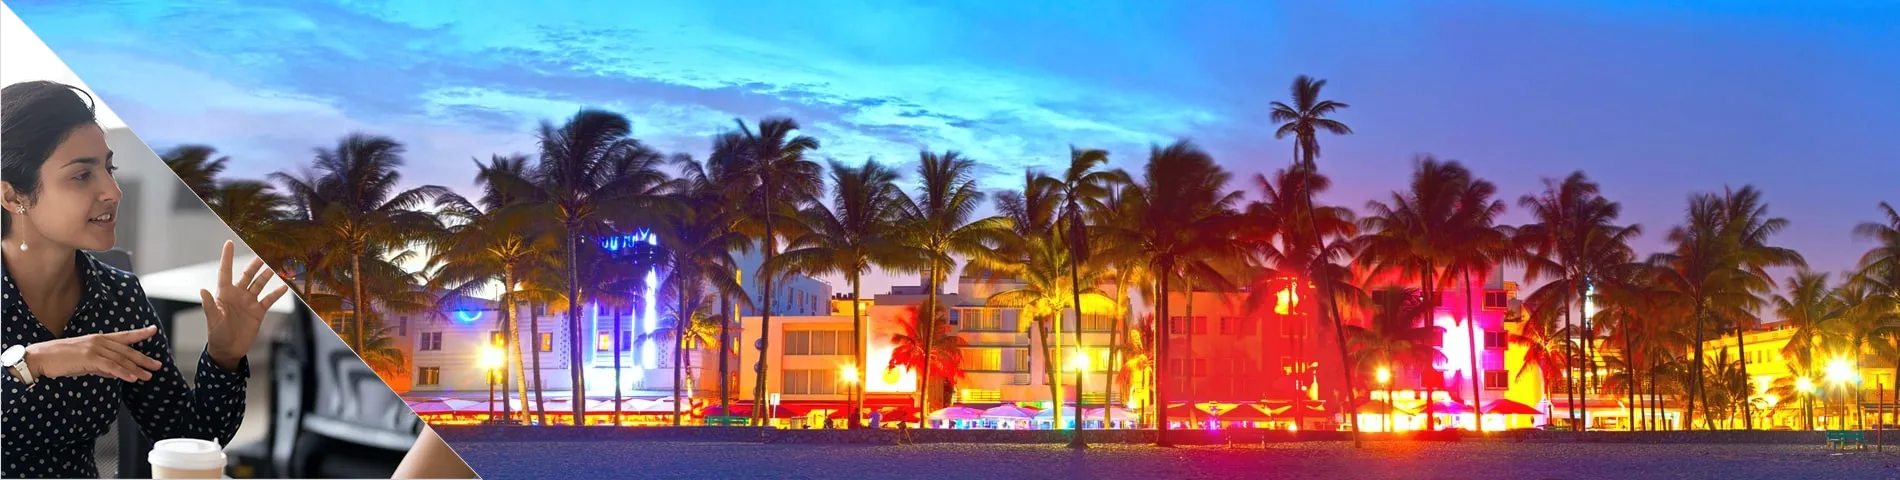 Miami - 